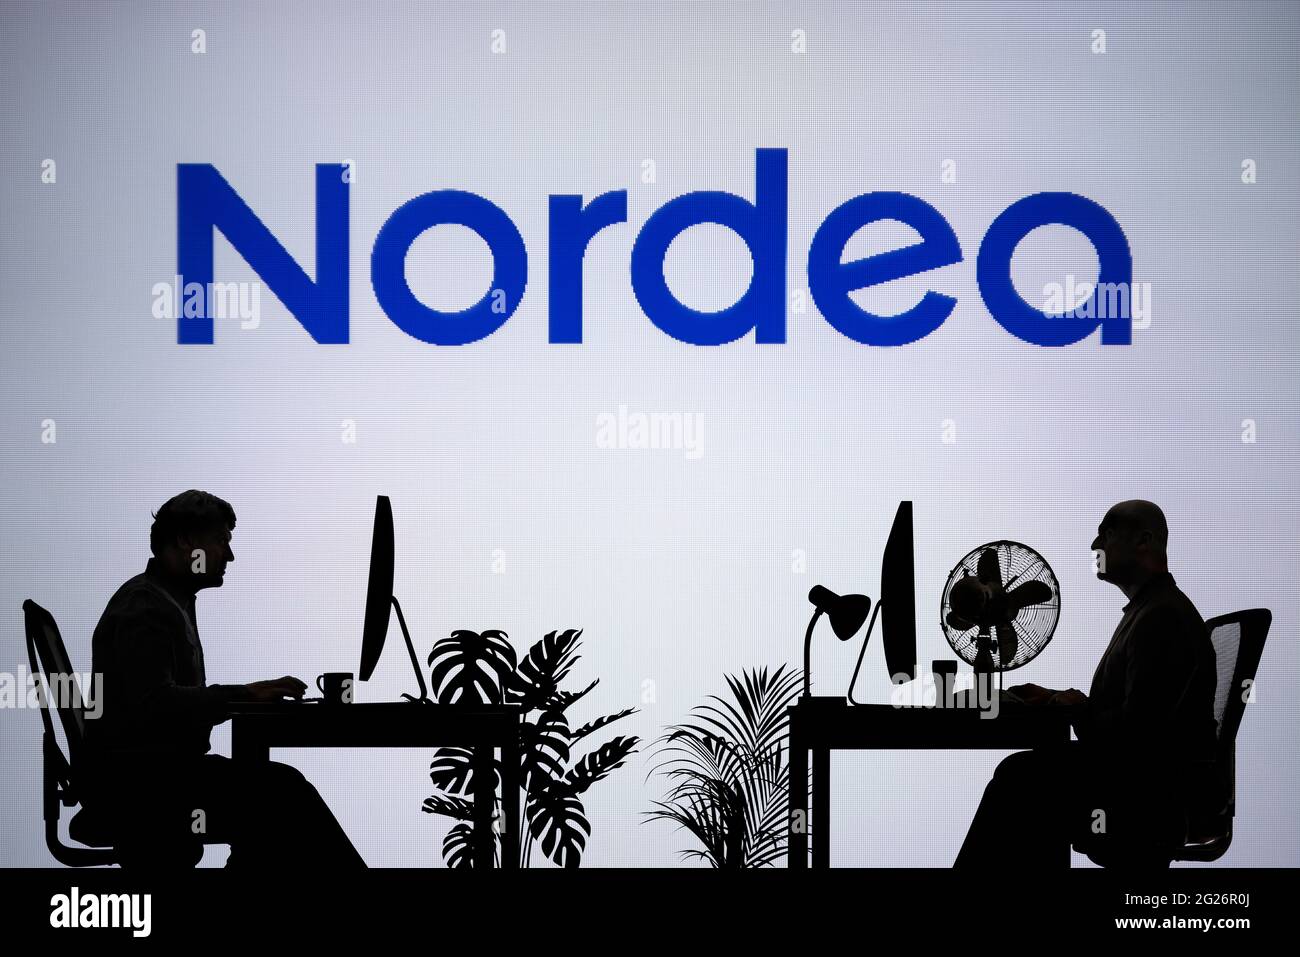 El logotipo de Nordea se ve en una pantalla LED de fondo, mientras que dos personas con siluetas trabajan en un entorno de oficina (sólo para uso editorial) Foto de stock